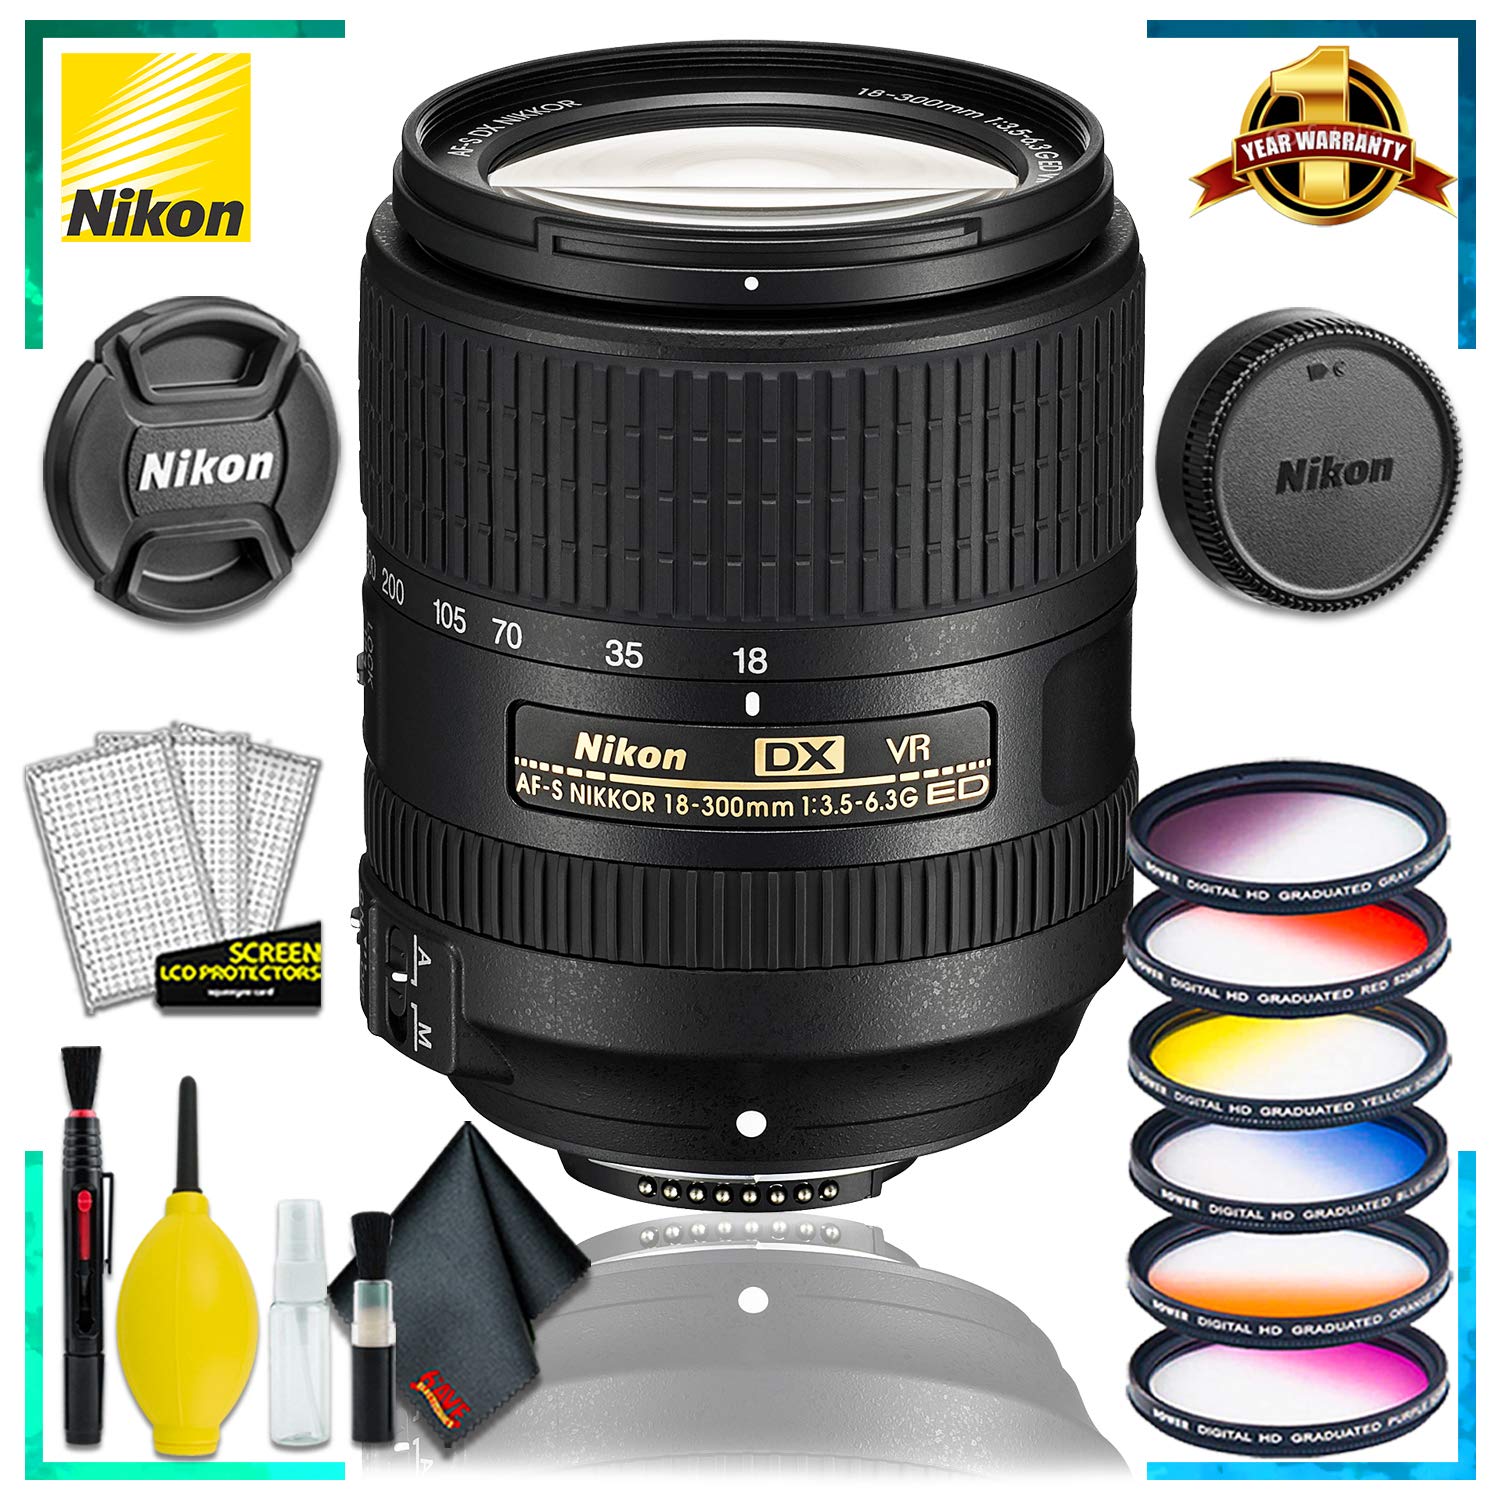 Nikon AF-S DX VR Nikkor 18-300MM Lens (Intl Model) + Vivitar Graduated Color Filter Set + Cleaning Kit